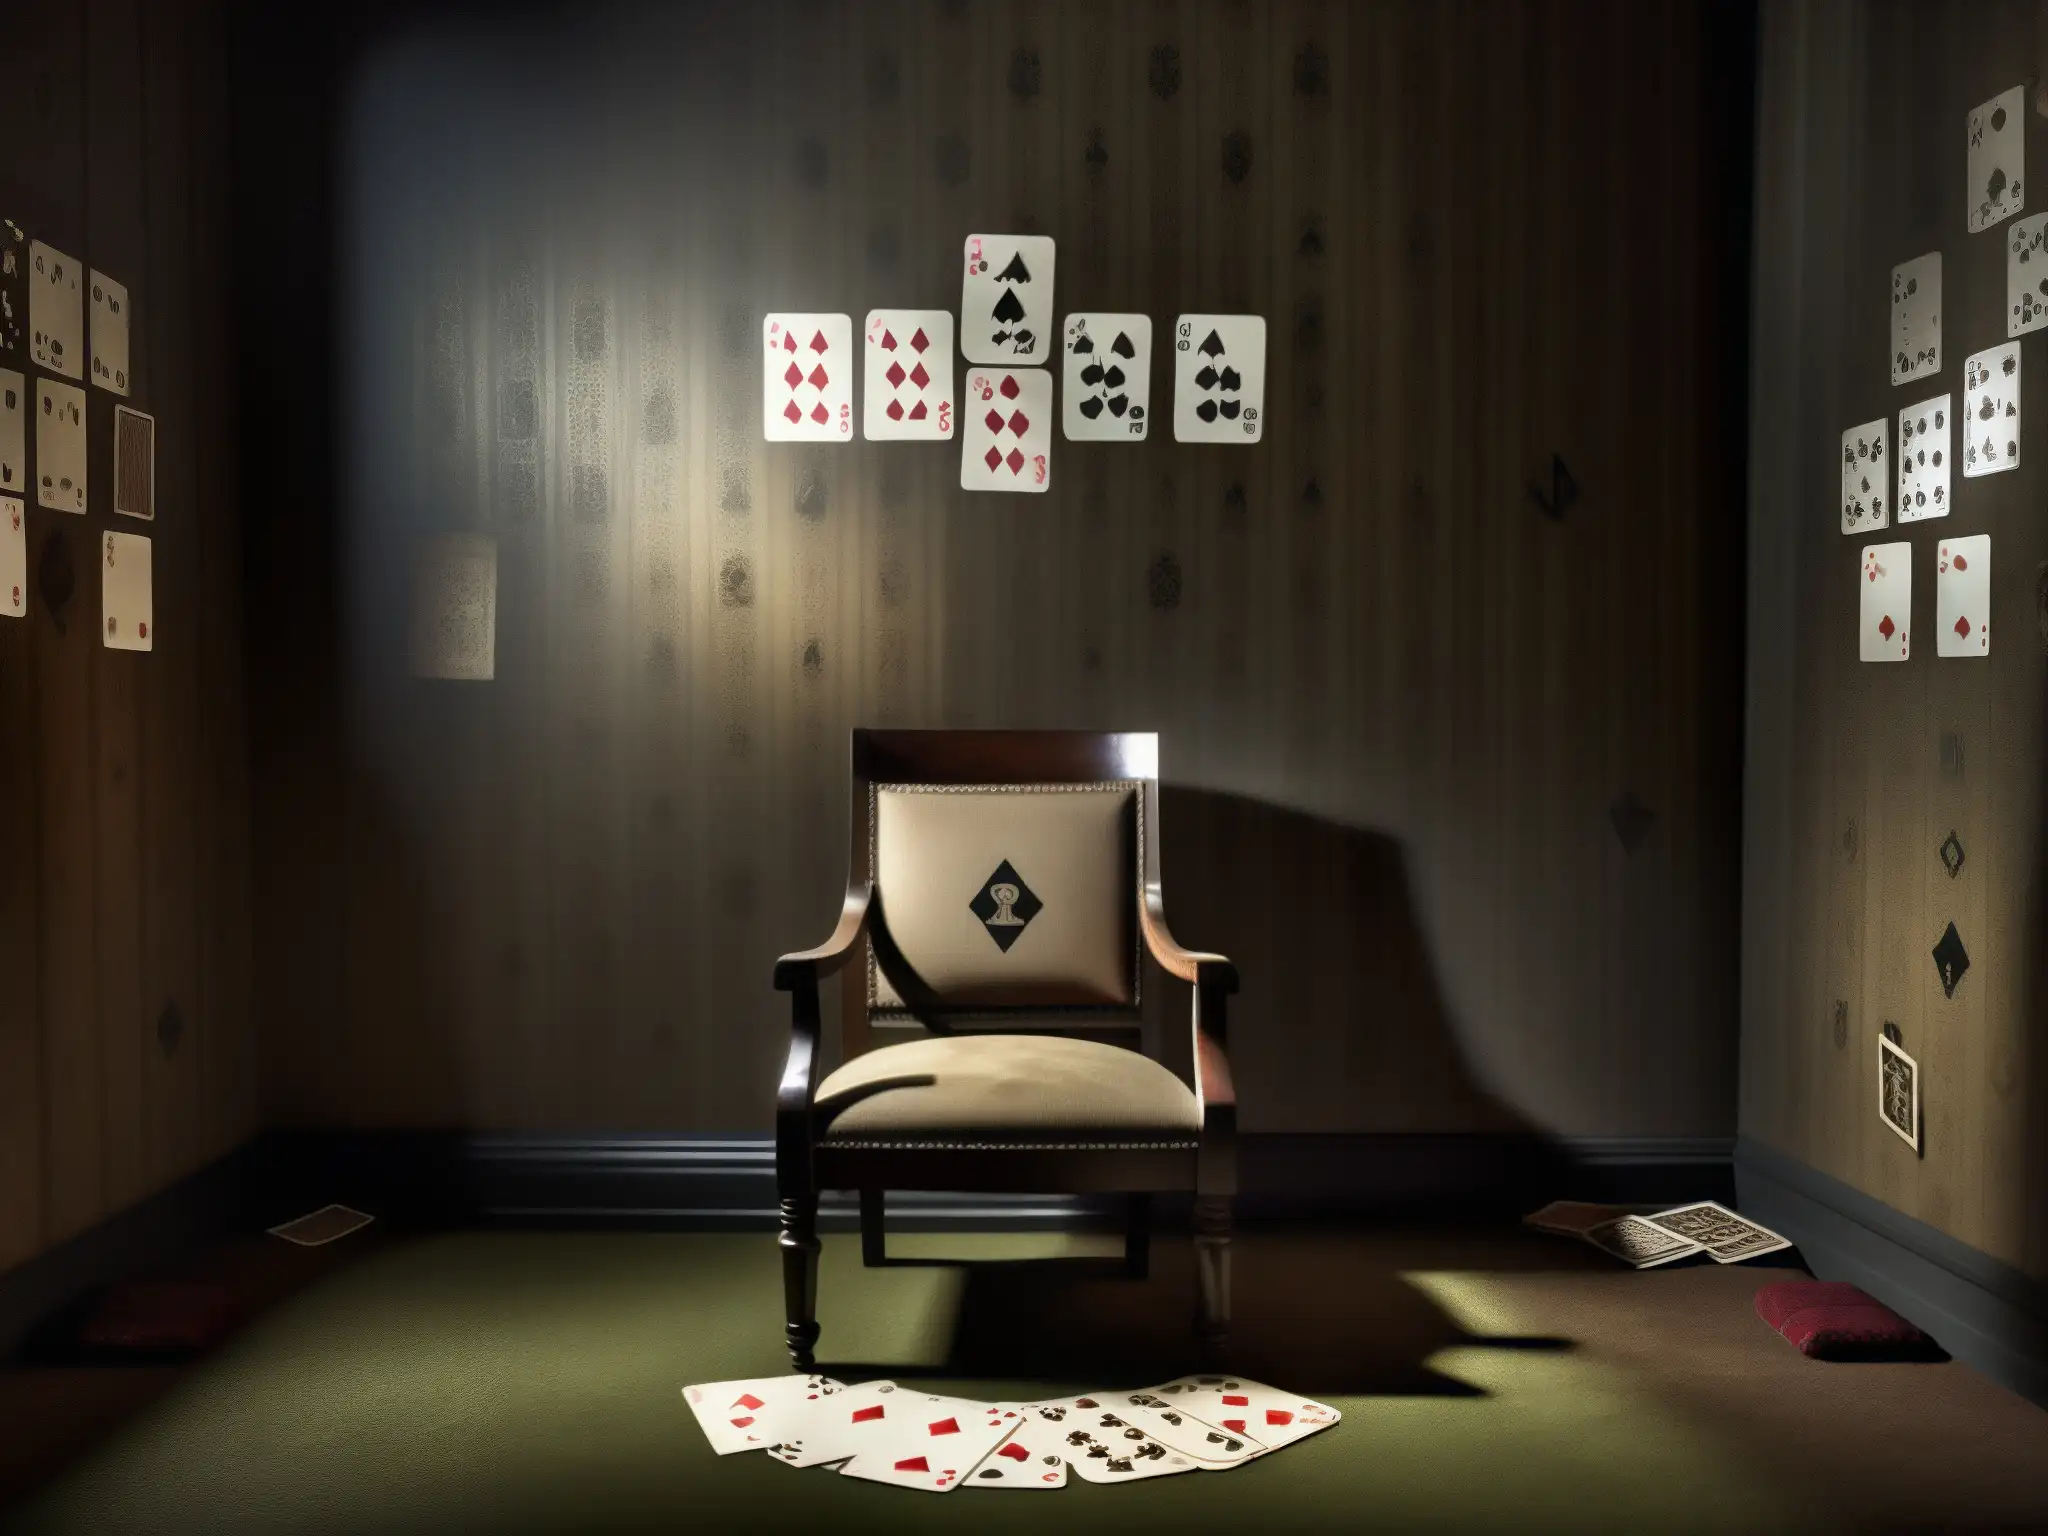 Escena misteriosa con silla rodeada de cartas y muñeca, símbolos en las paredes